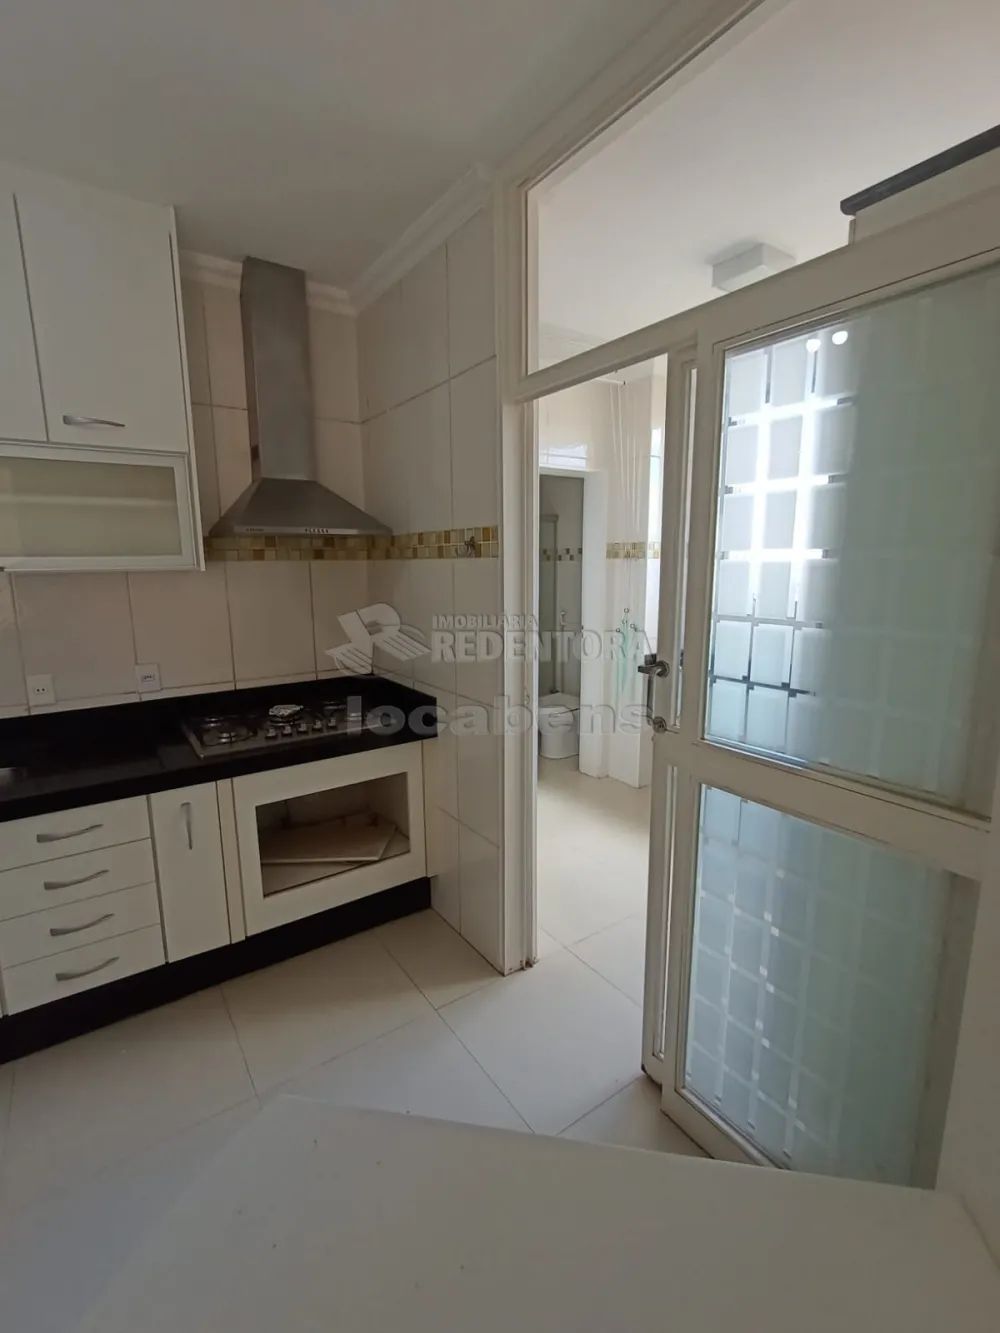 Comprar Apartamento / Padrão em São José do Rio Preto apenas R$ 425.000,00 - Foto 3